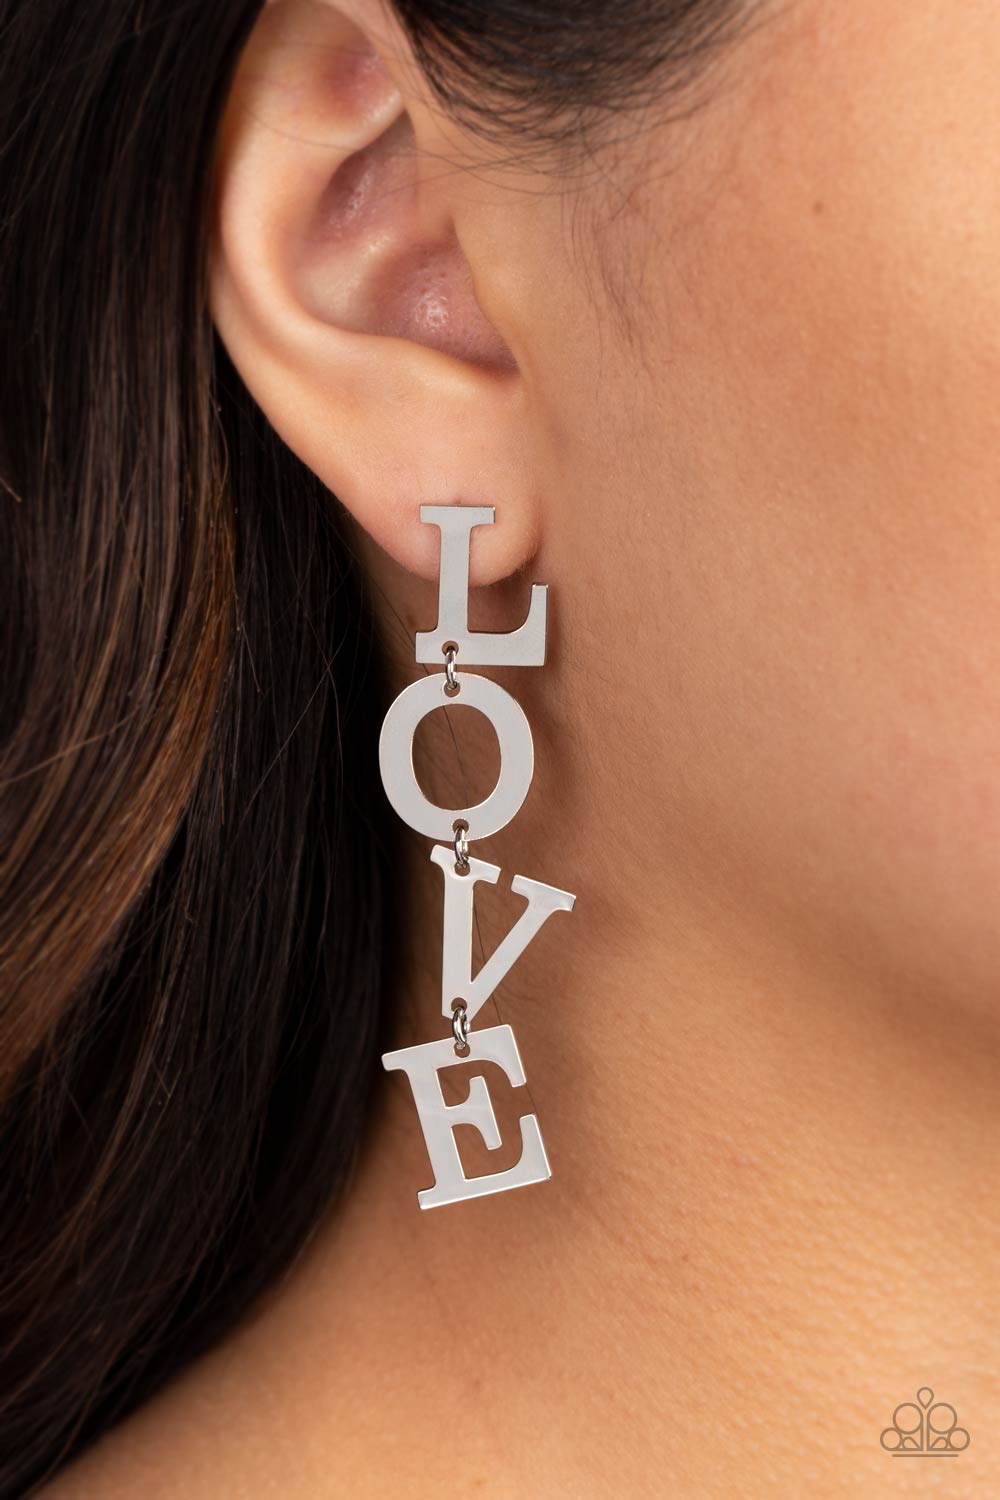 L-O-V-E Silver Earrings - Jewelry by Bretta